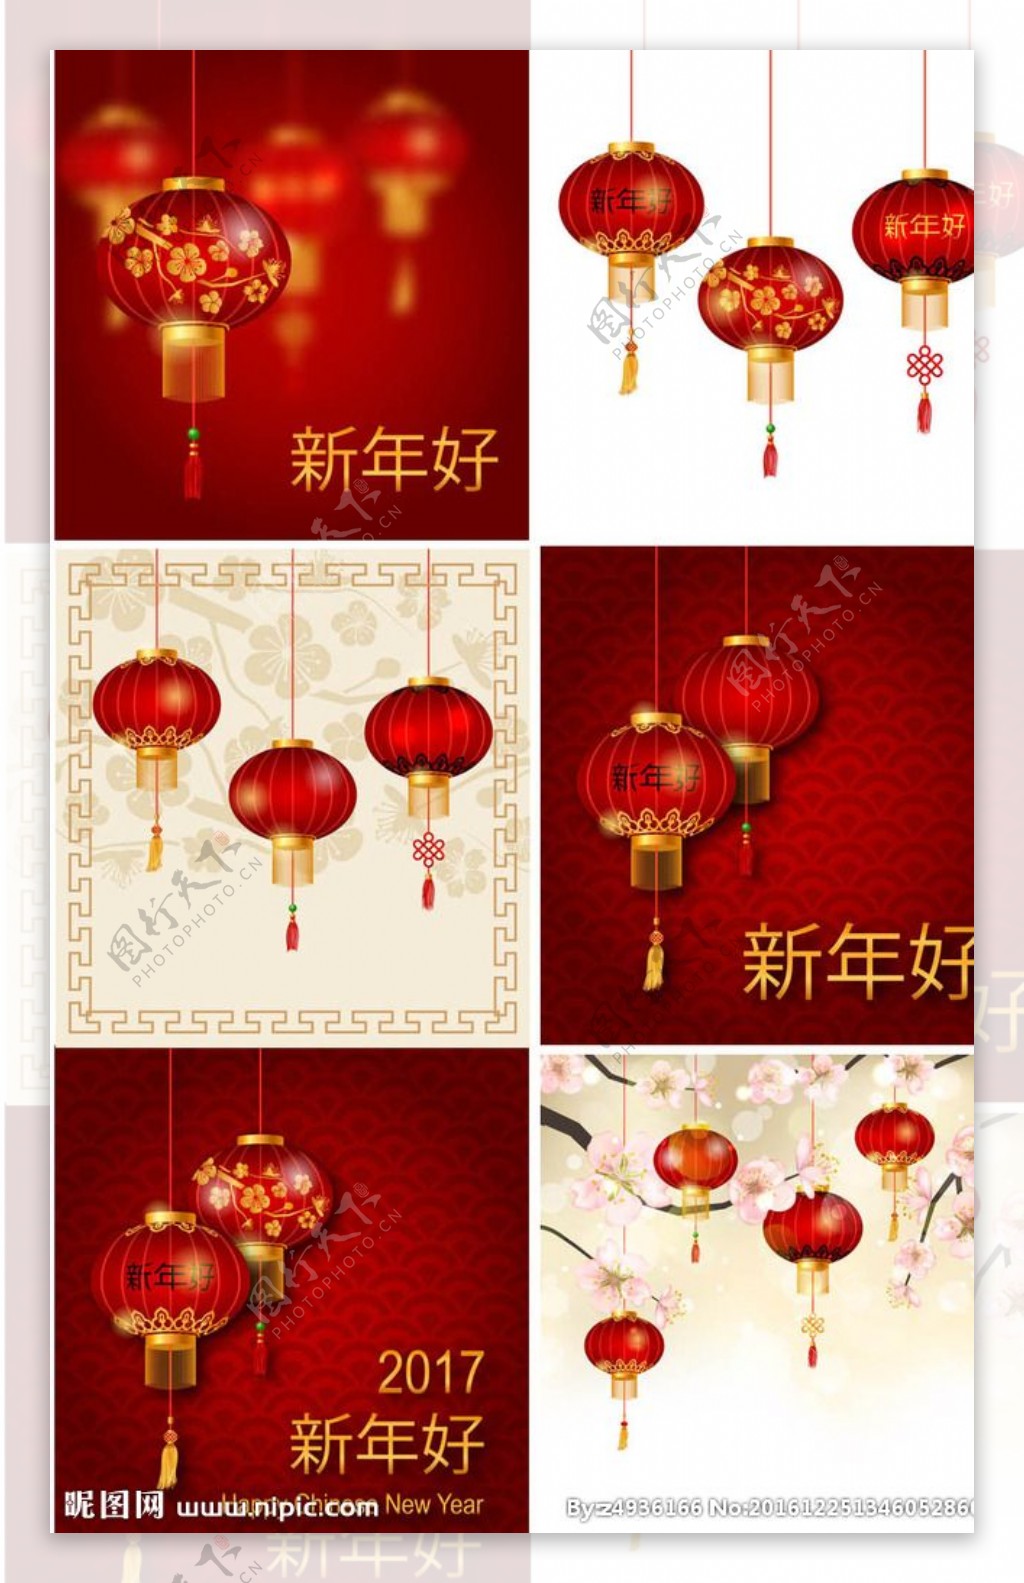 新年春节节日灯笼矢量素材